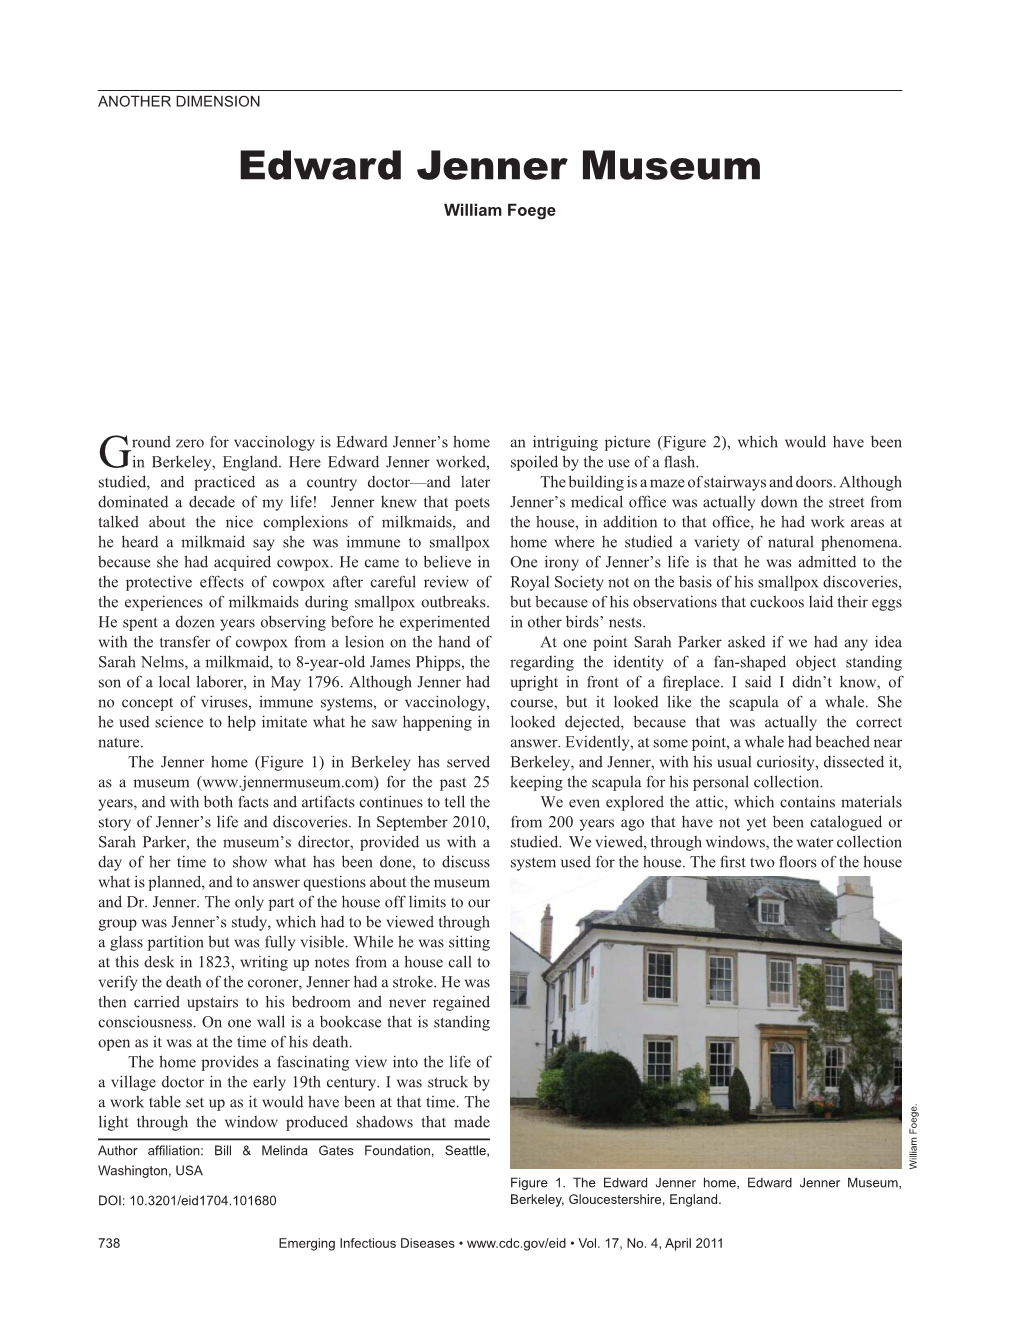 Edward Jenner Museum William Foege